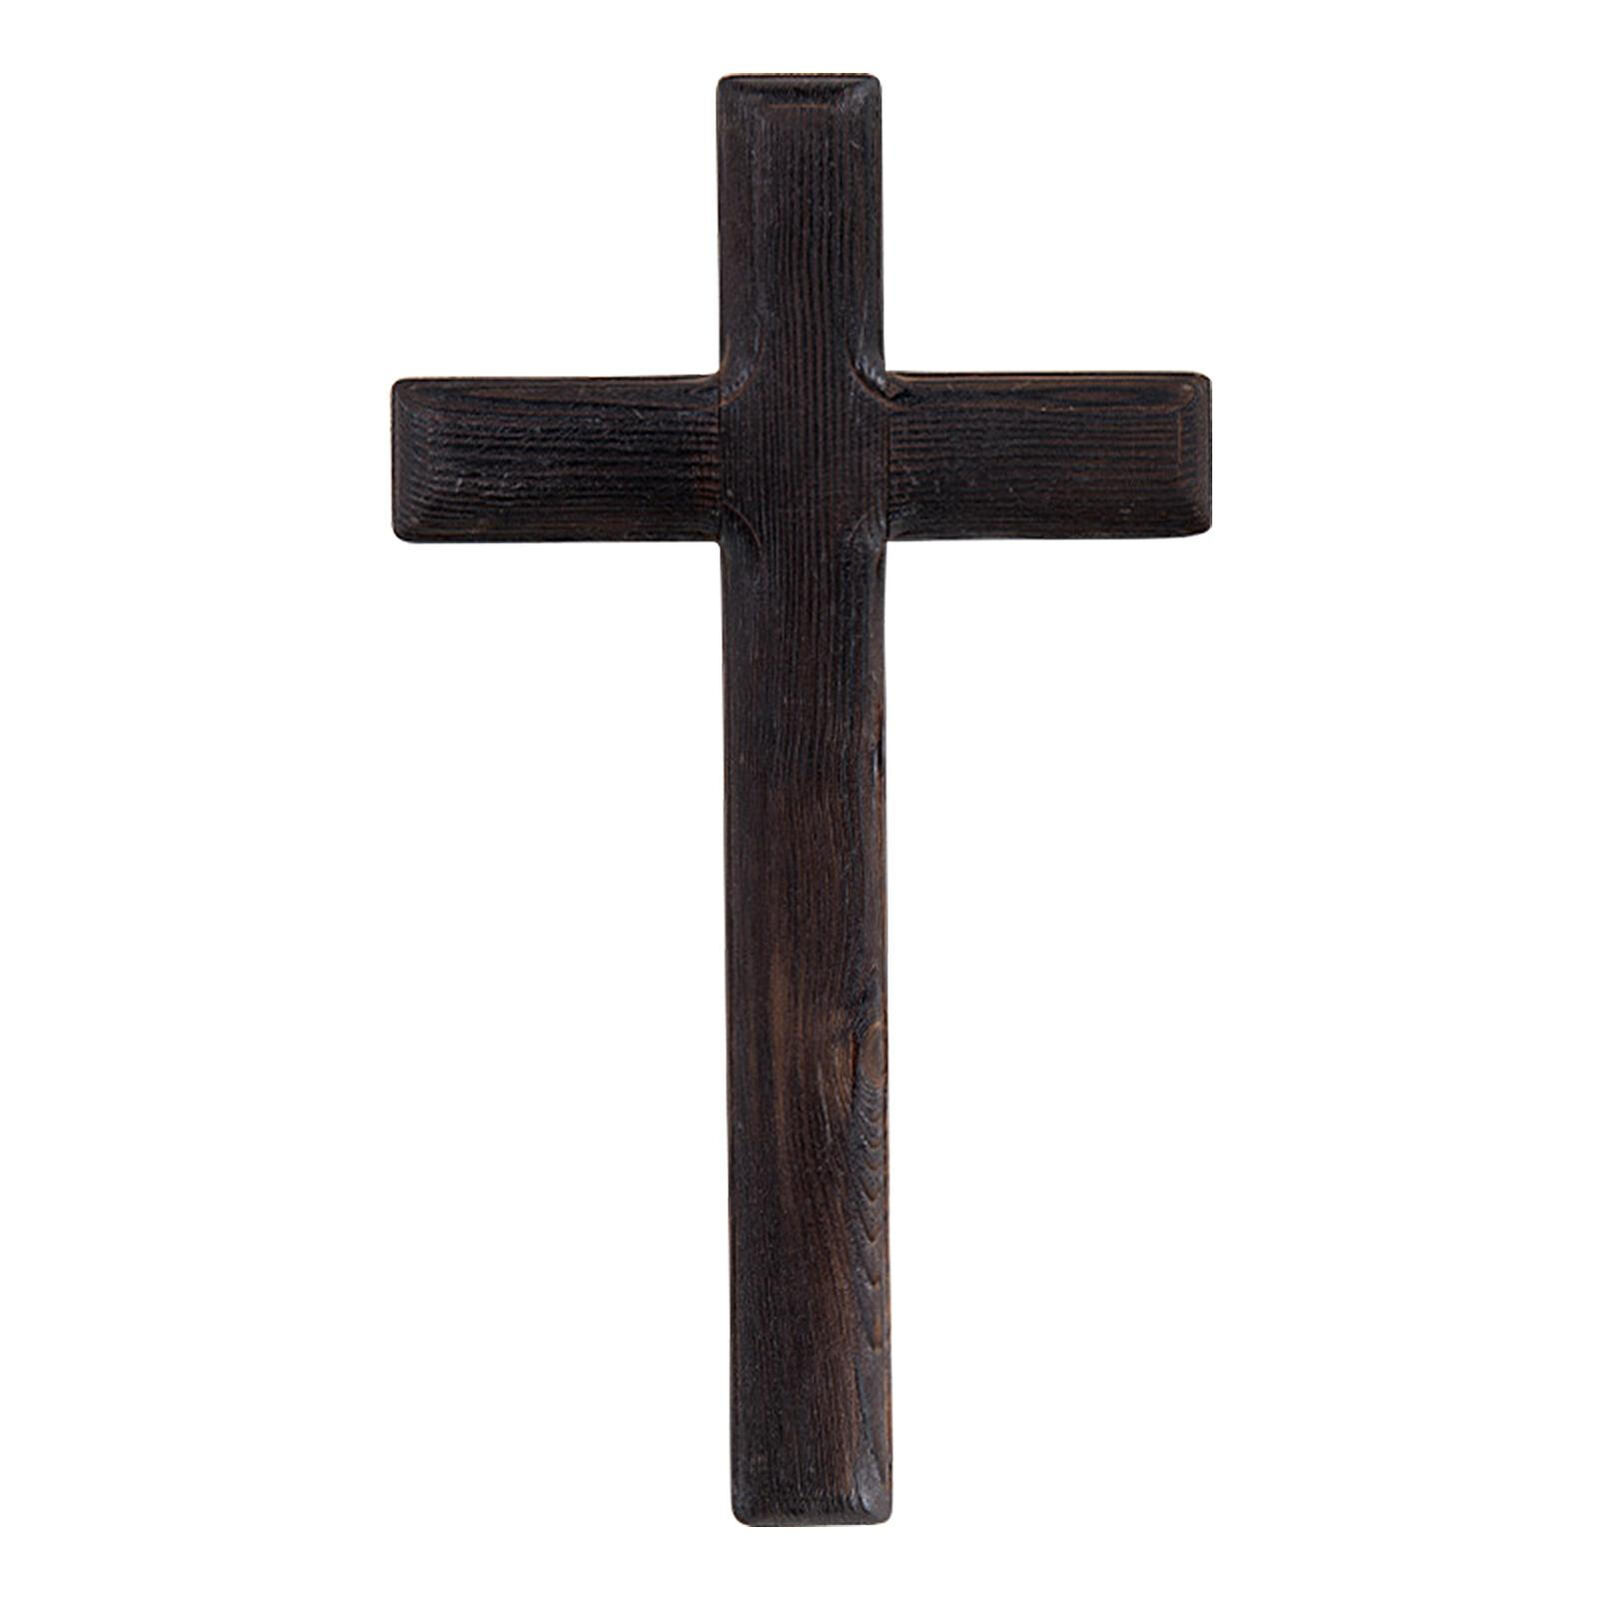 Black Wooden Cross Wood Holding Clinging Cross for Bless Handheld Cross for Gift